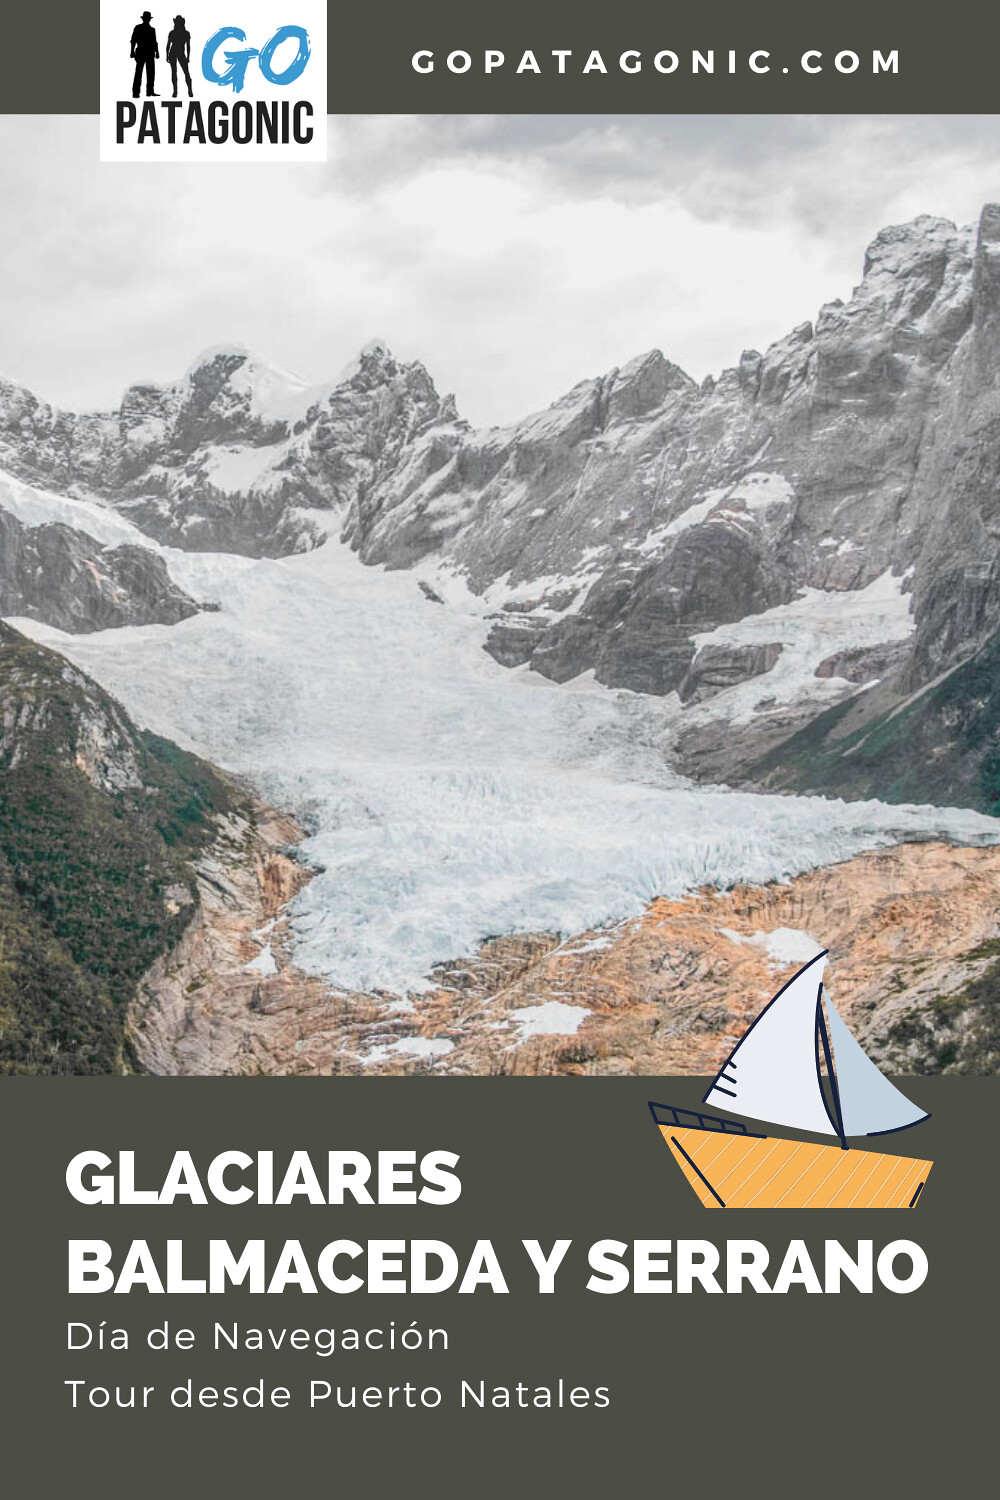 Navegación al glaciar Balmaceda y Serrano